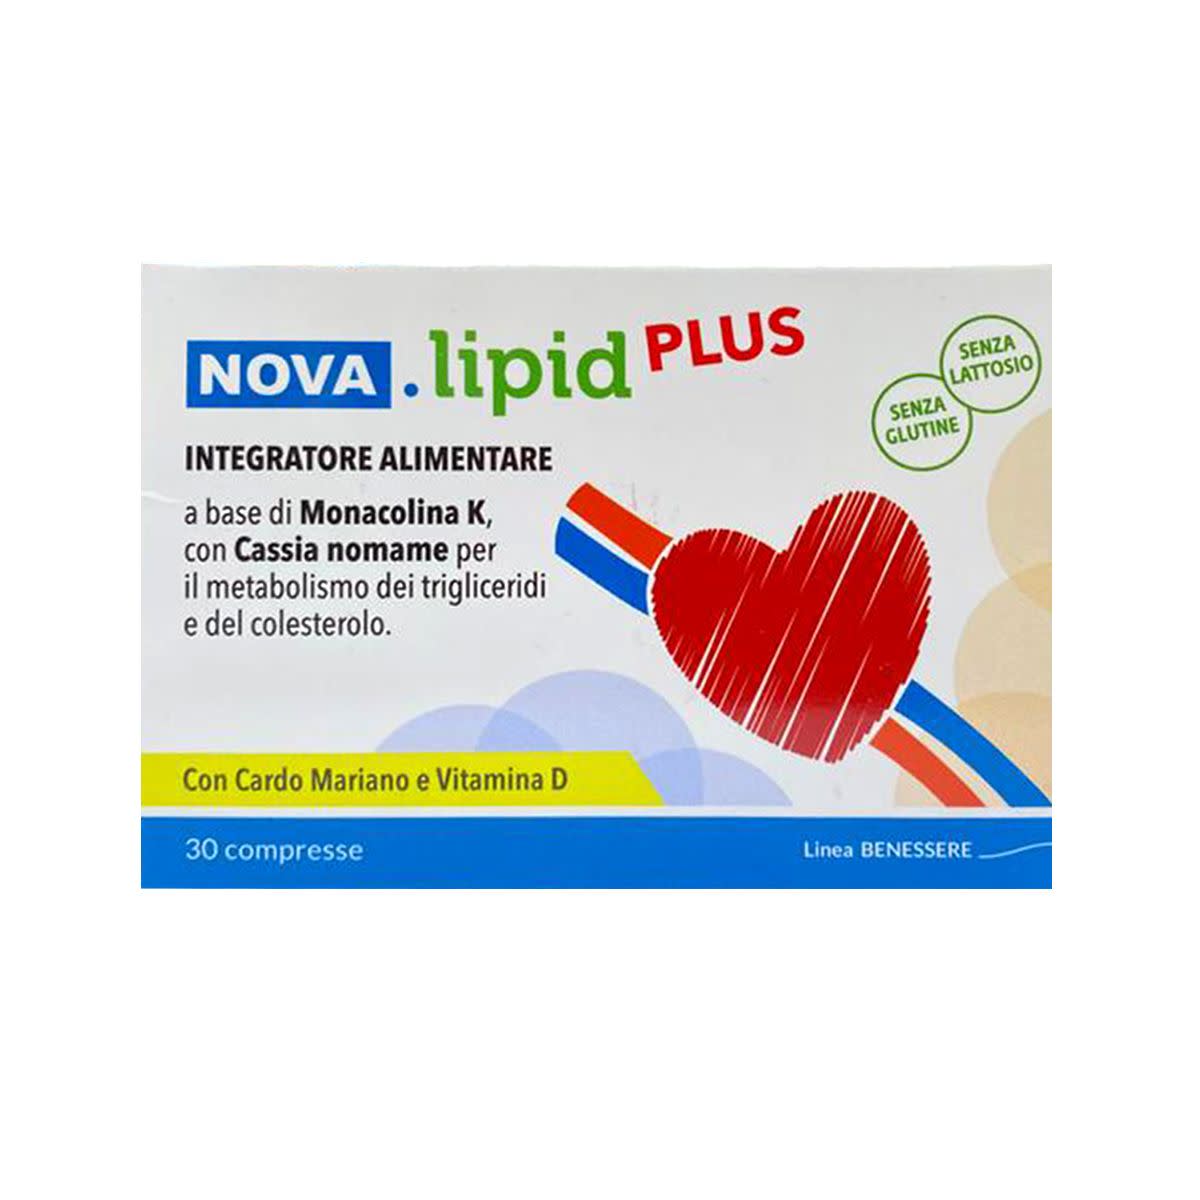 984562165 - Nova Lipid Plus Integratore controllo colesterolo 30 compresse - 4740915_1.jpg